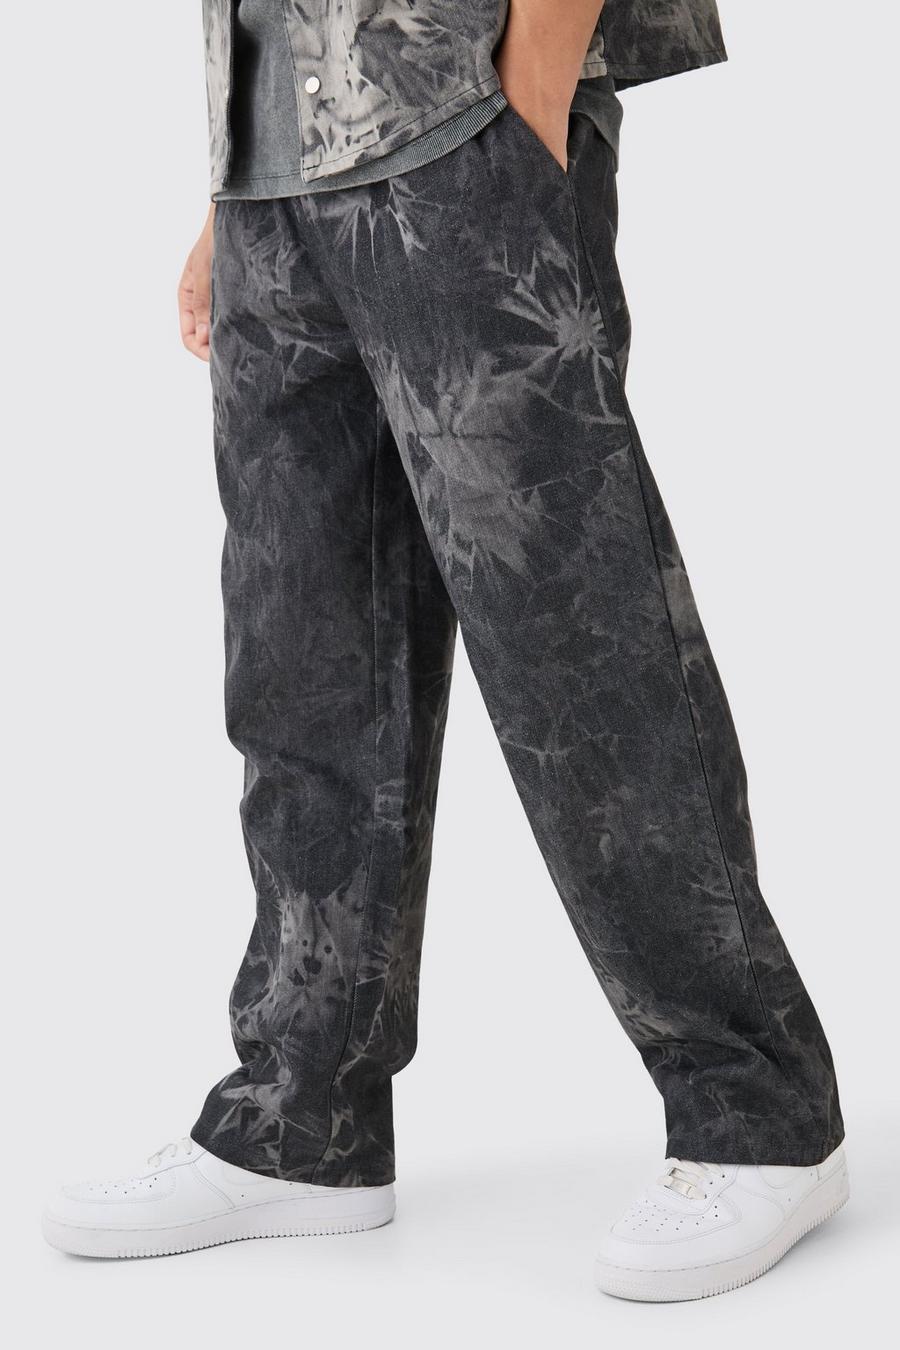 Jeans rilassati in tessuto elasticizzato in vita, Washed black